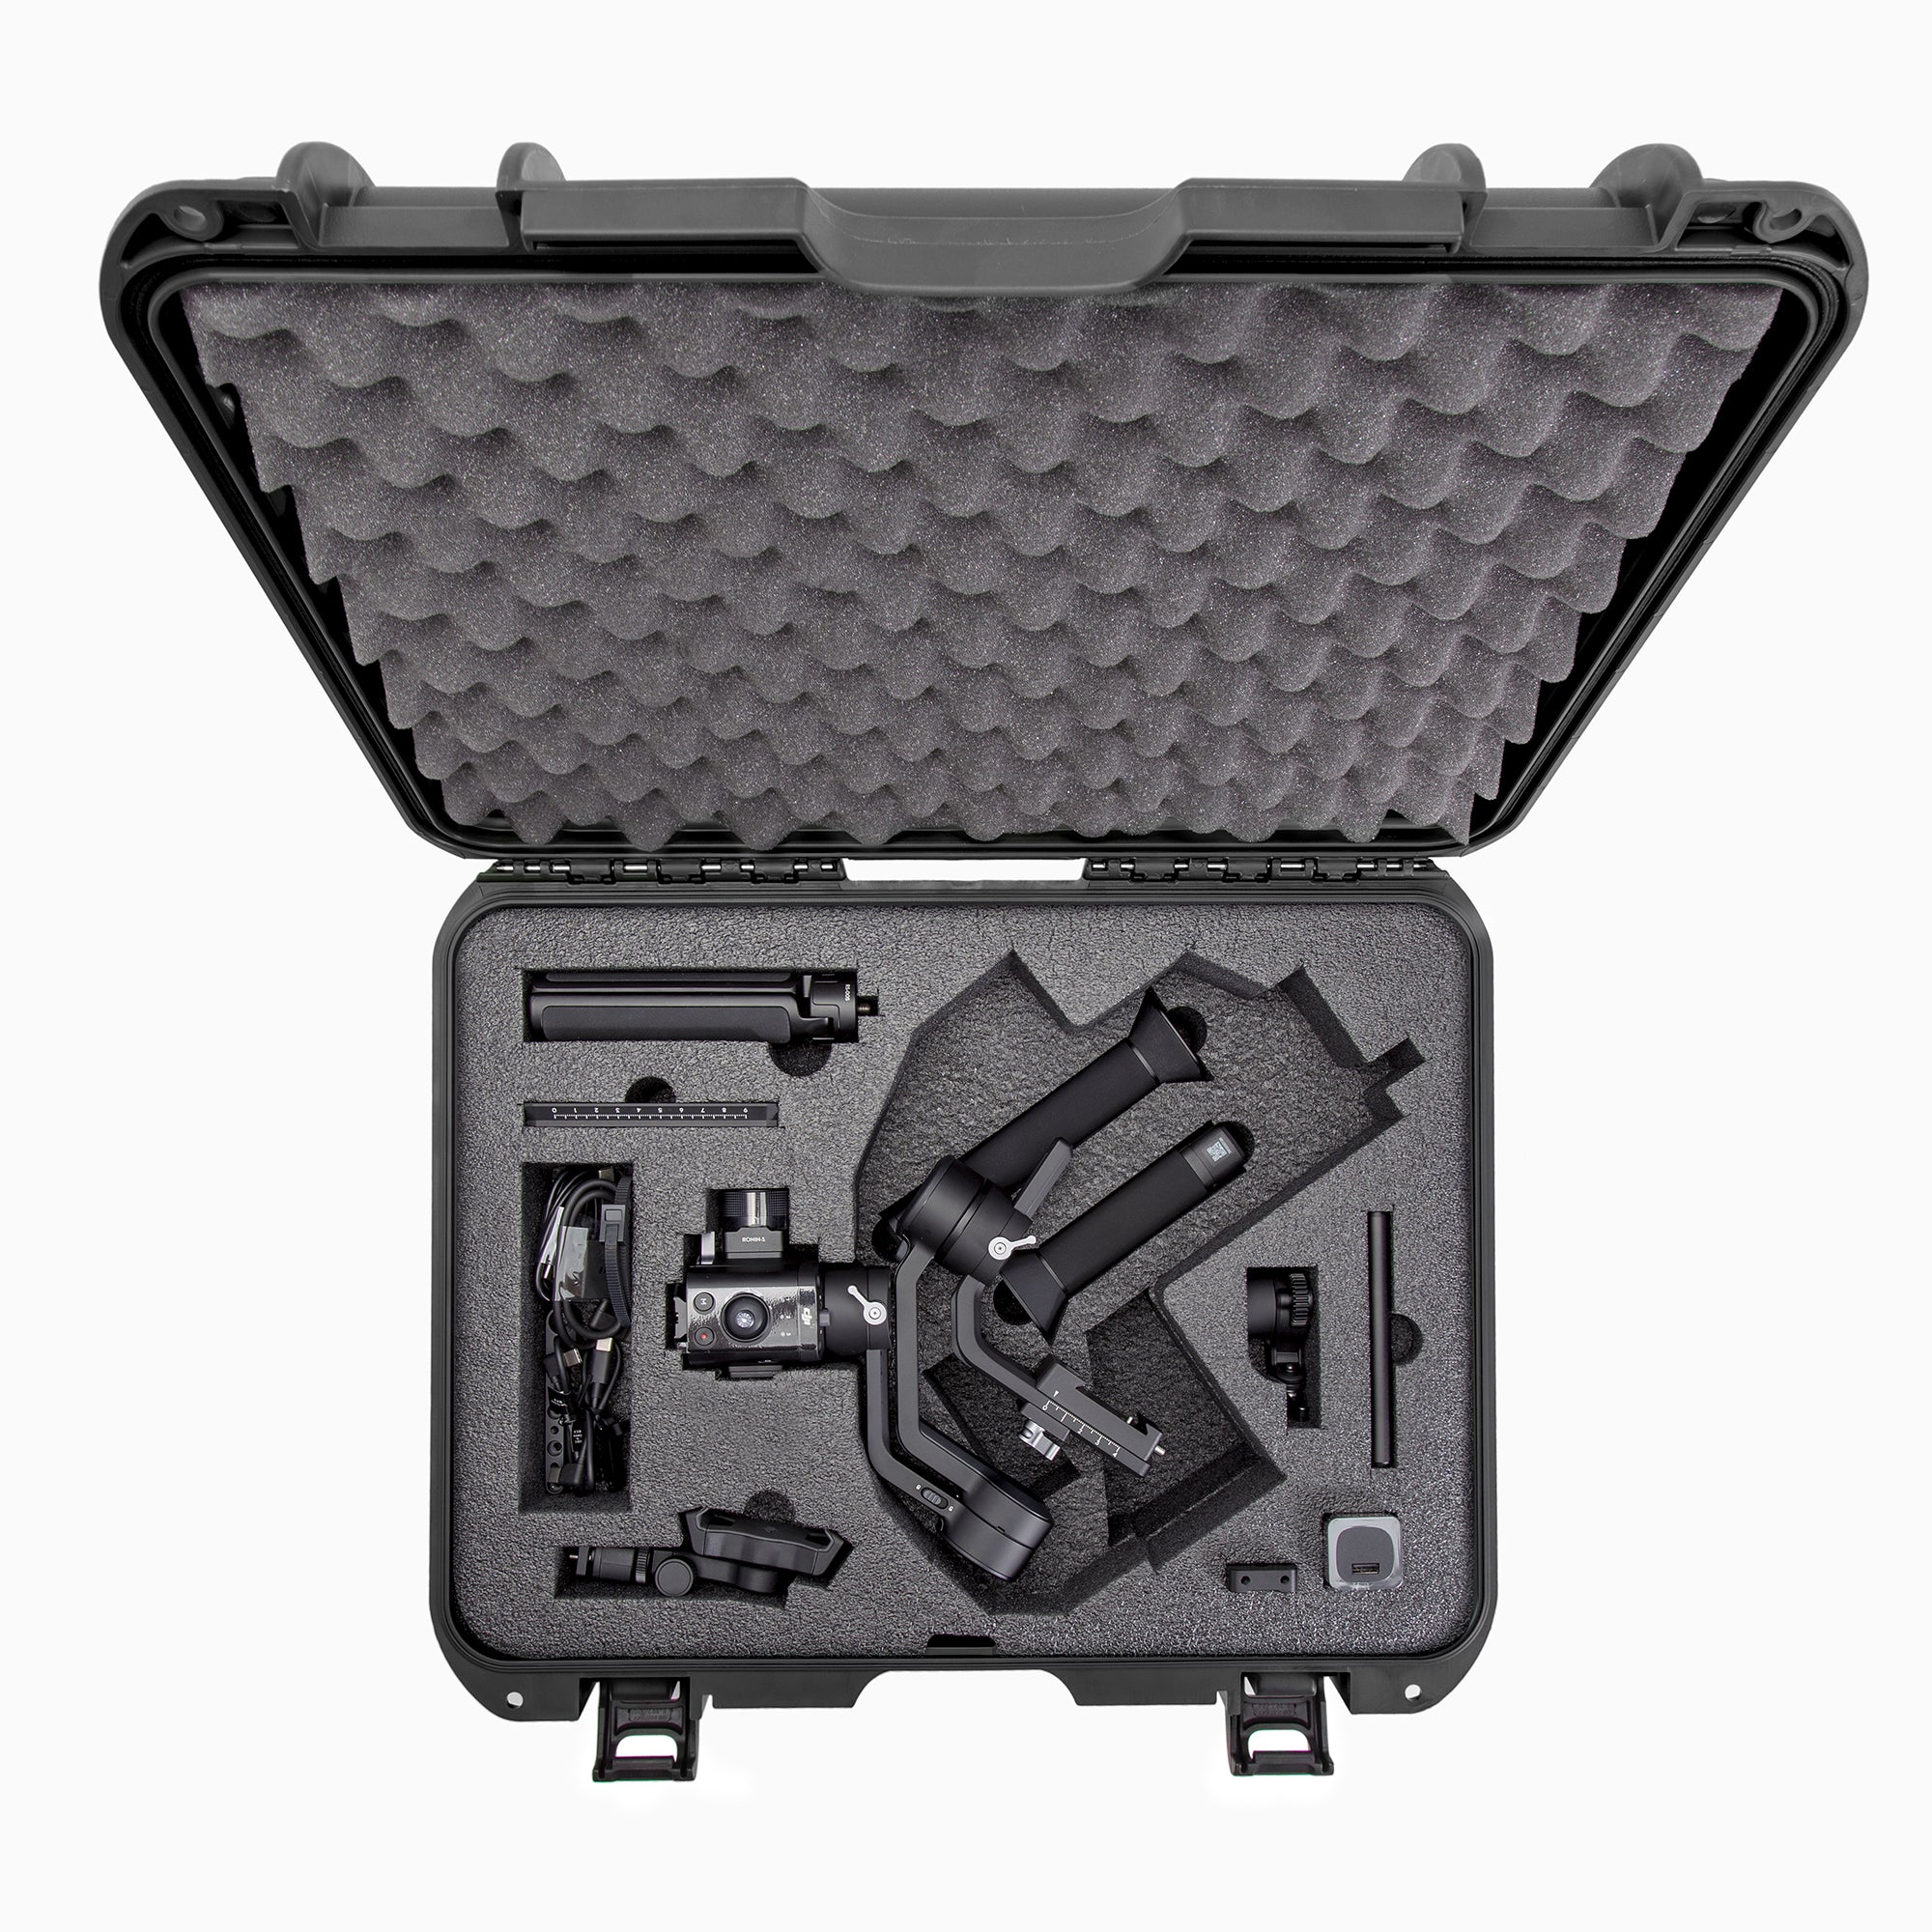 Nanuk 930 Waterproof Hard Case with Custom Foam Insert for DJI Ronin-SC - Black